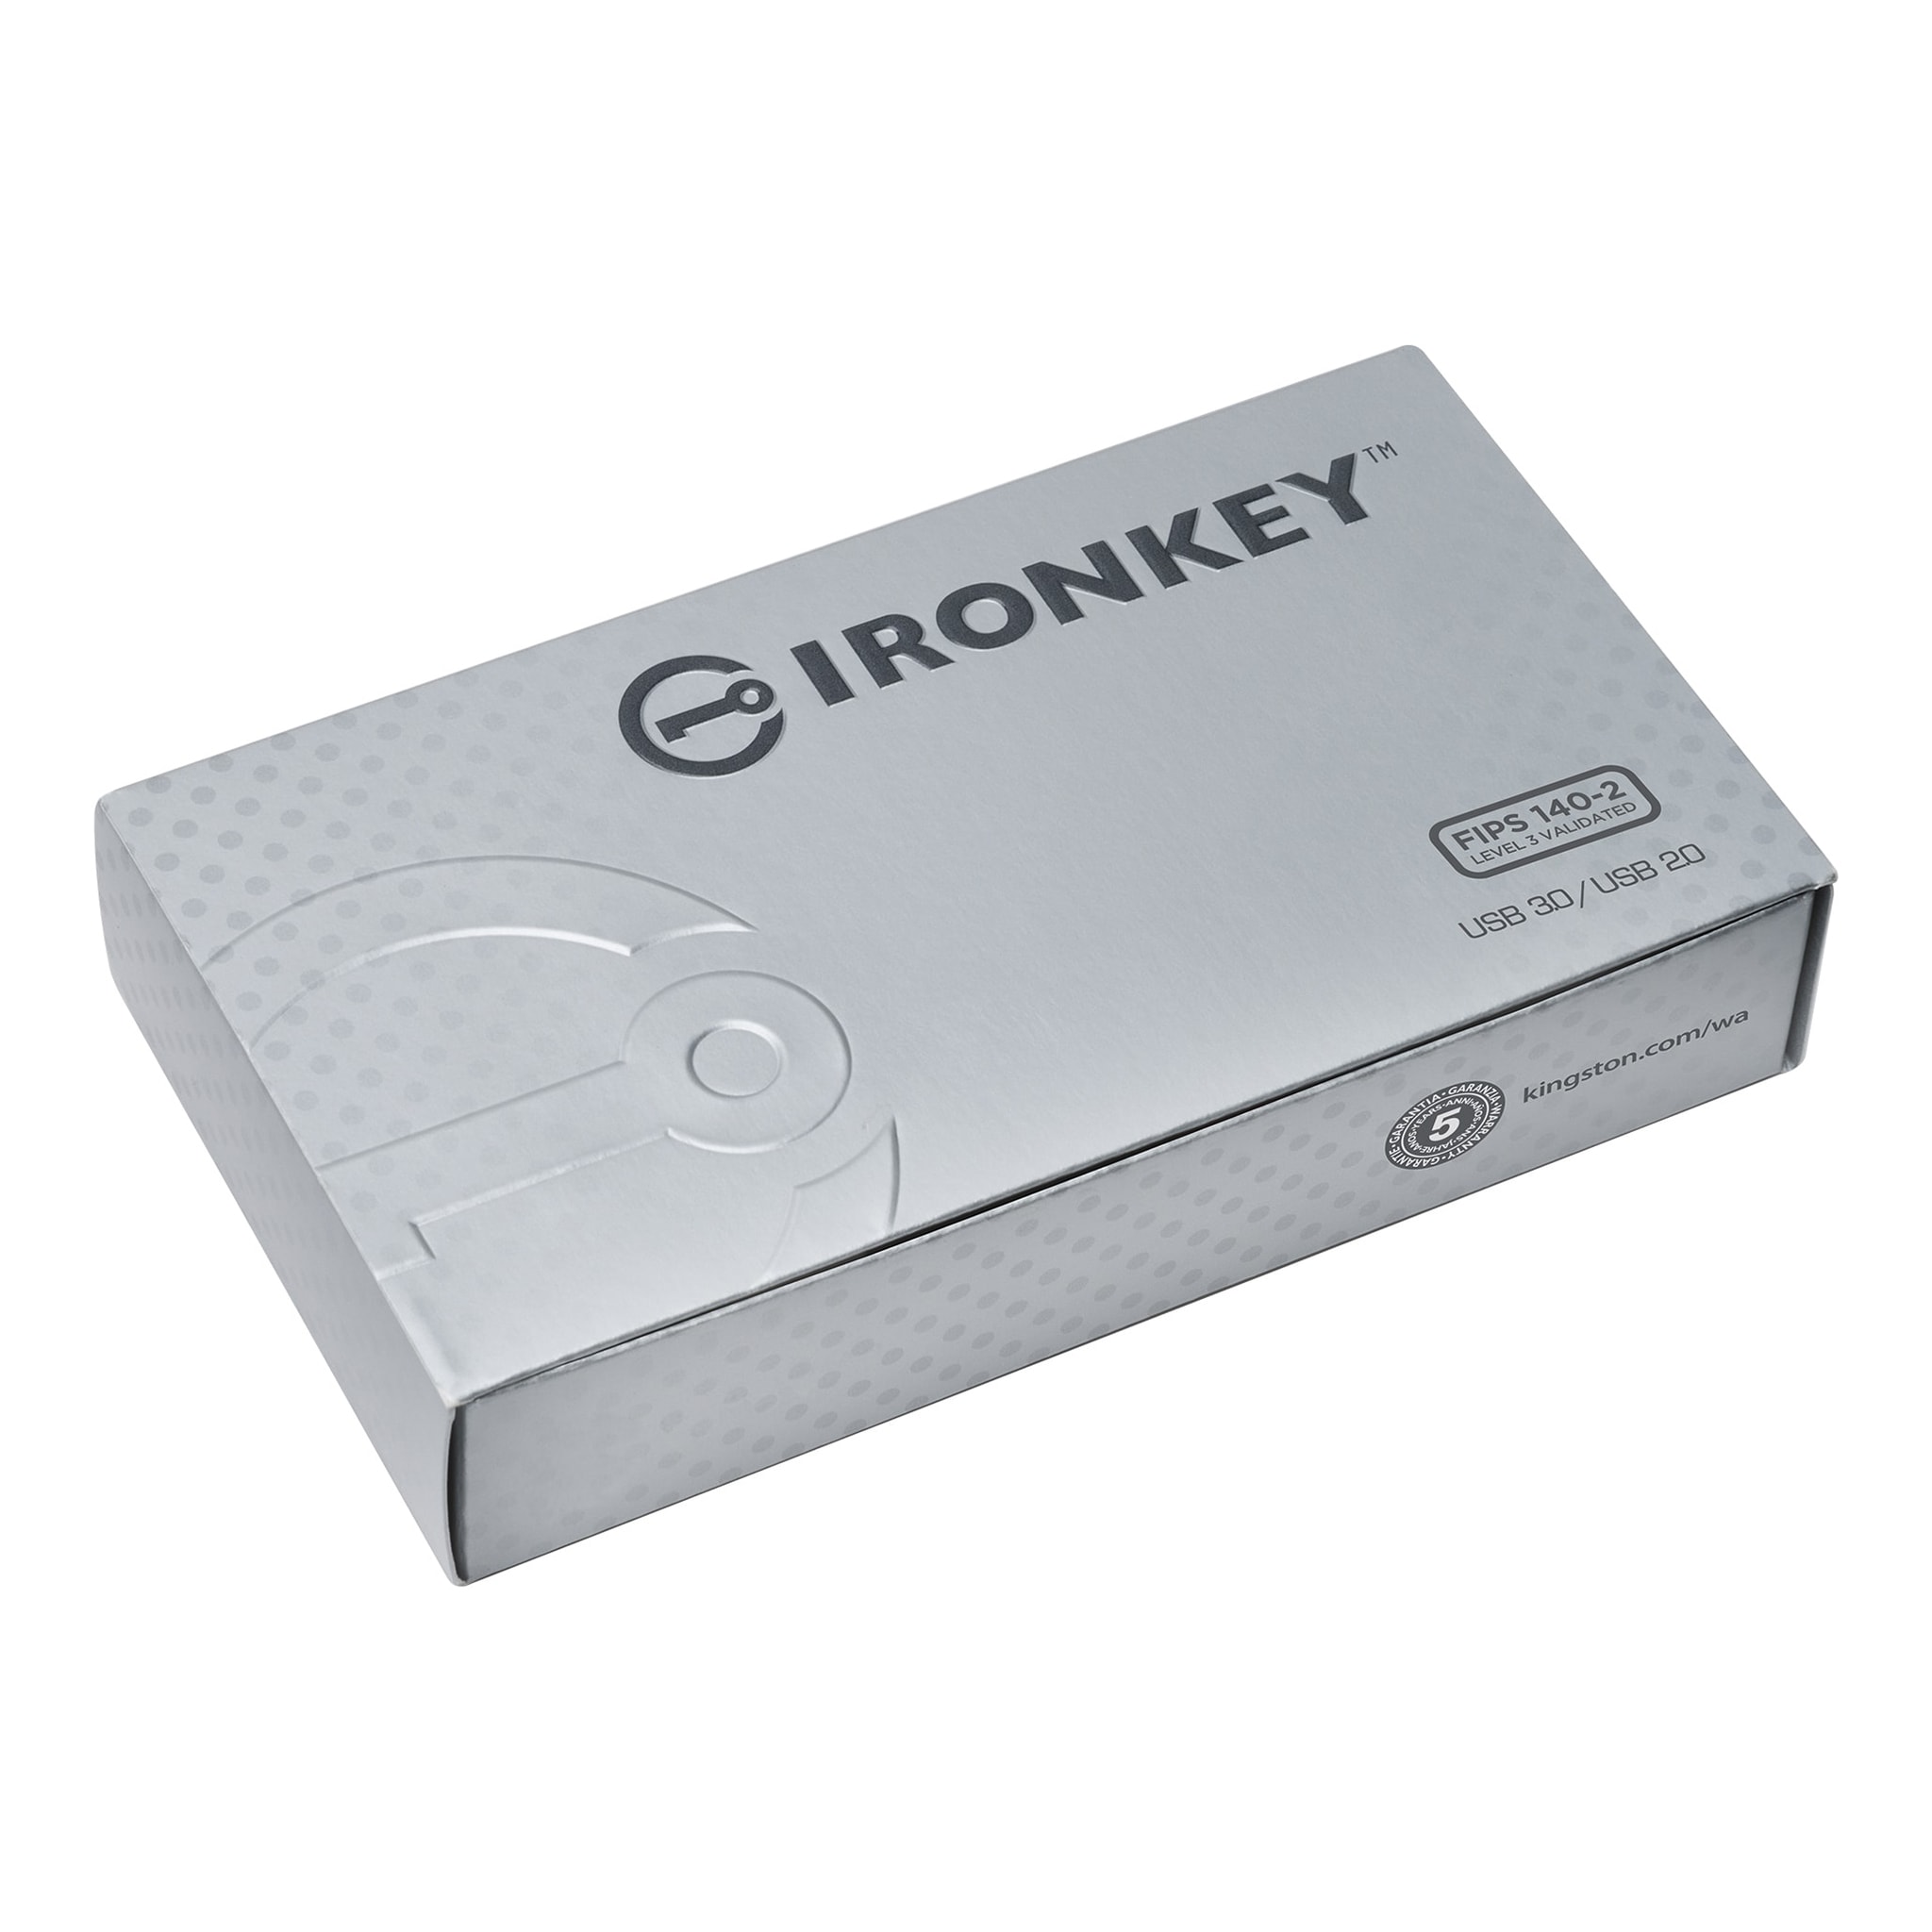 オンデバイスの Cryptochip 搭載の IronKey S1000 USB ドライブ - 4GB 